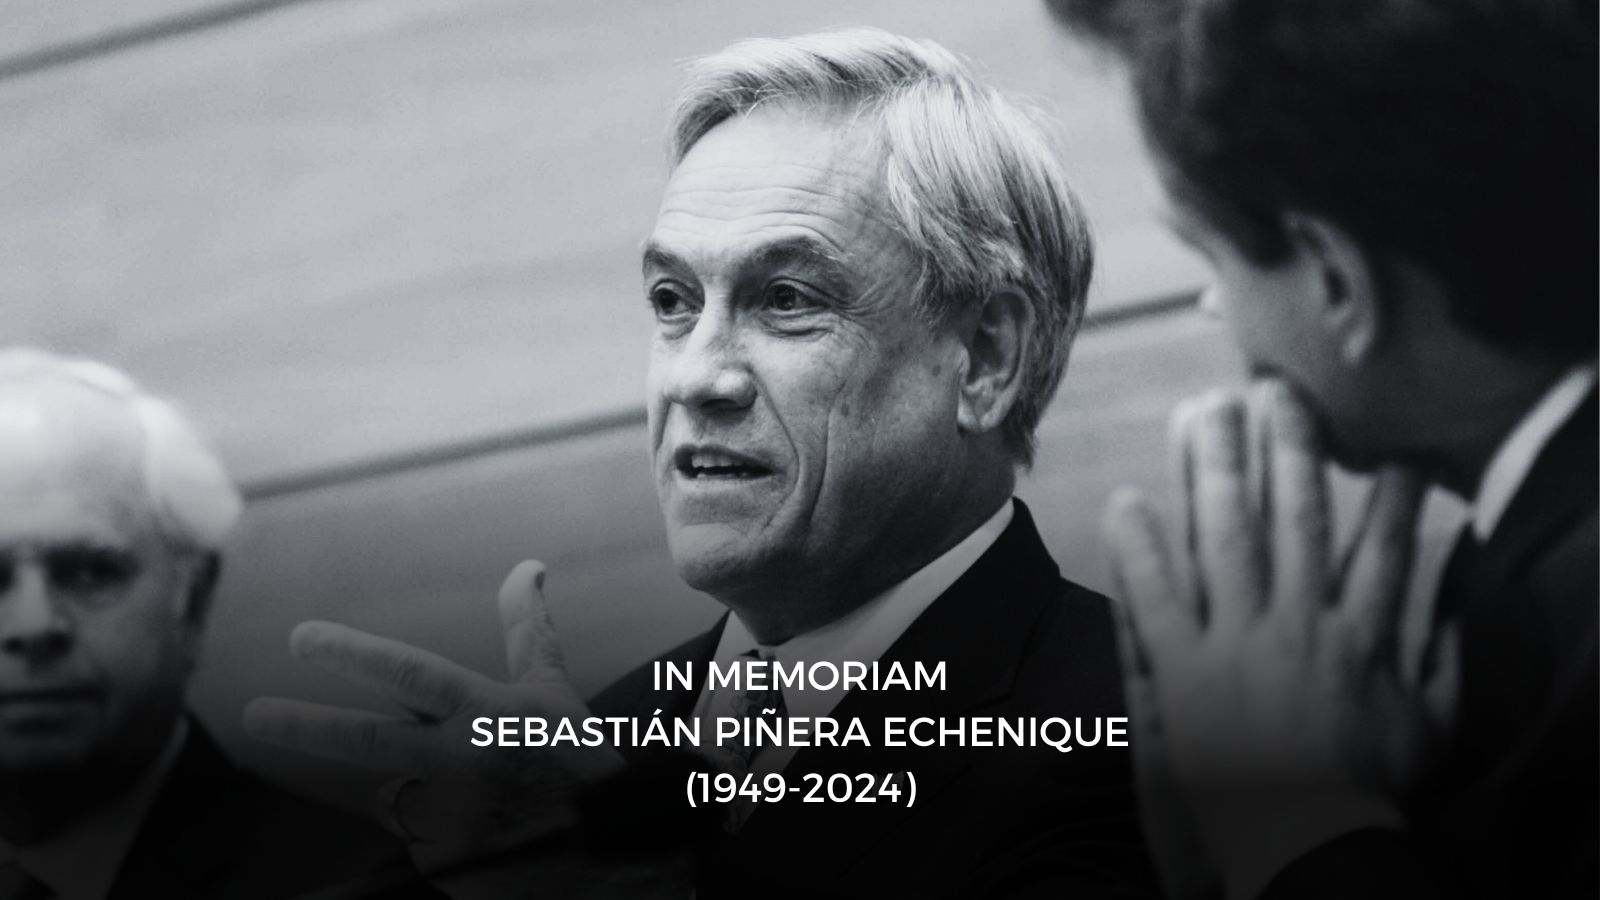 In memoriam Sebastián Piñera Echenique (1949-2024)